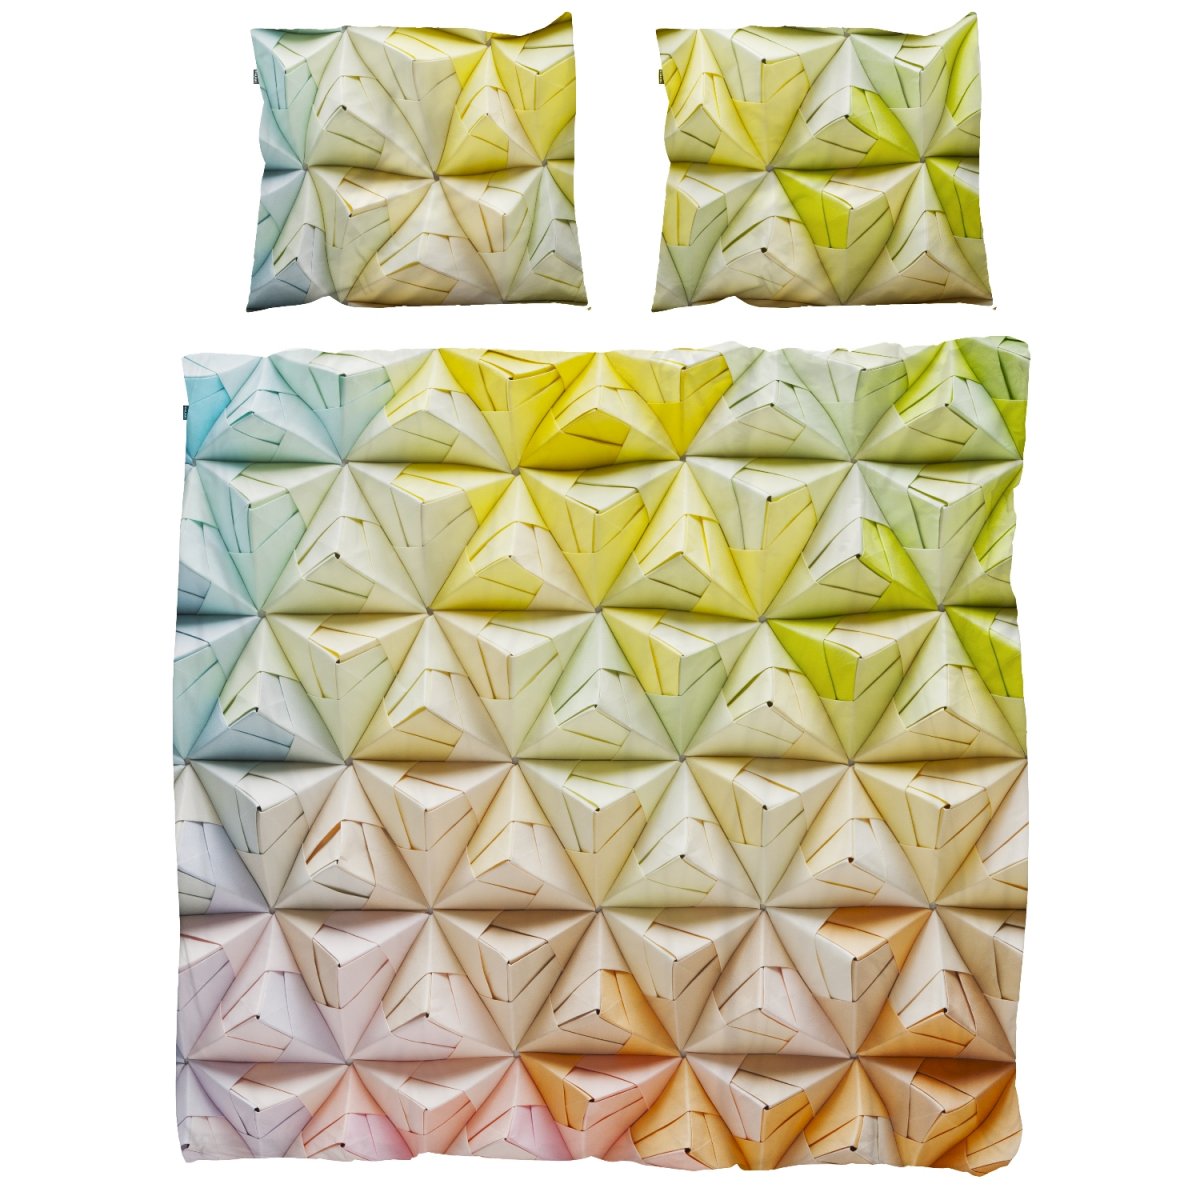 Ropa de cama Geogami, Origami en 3D